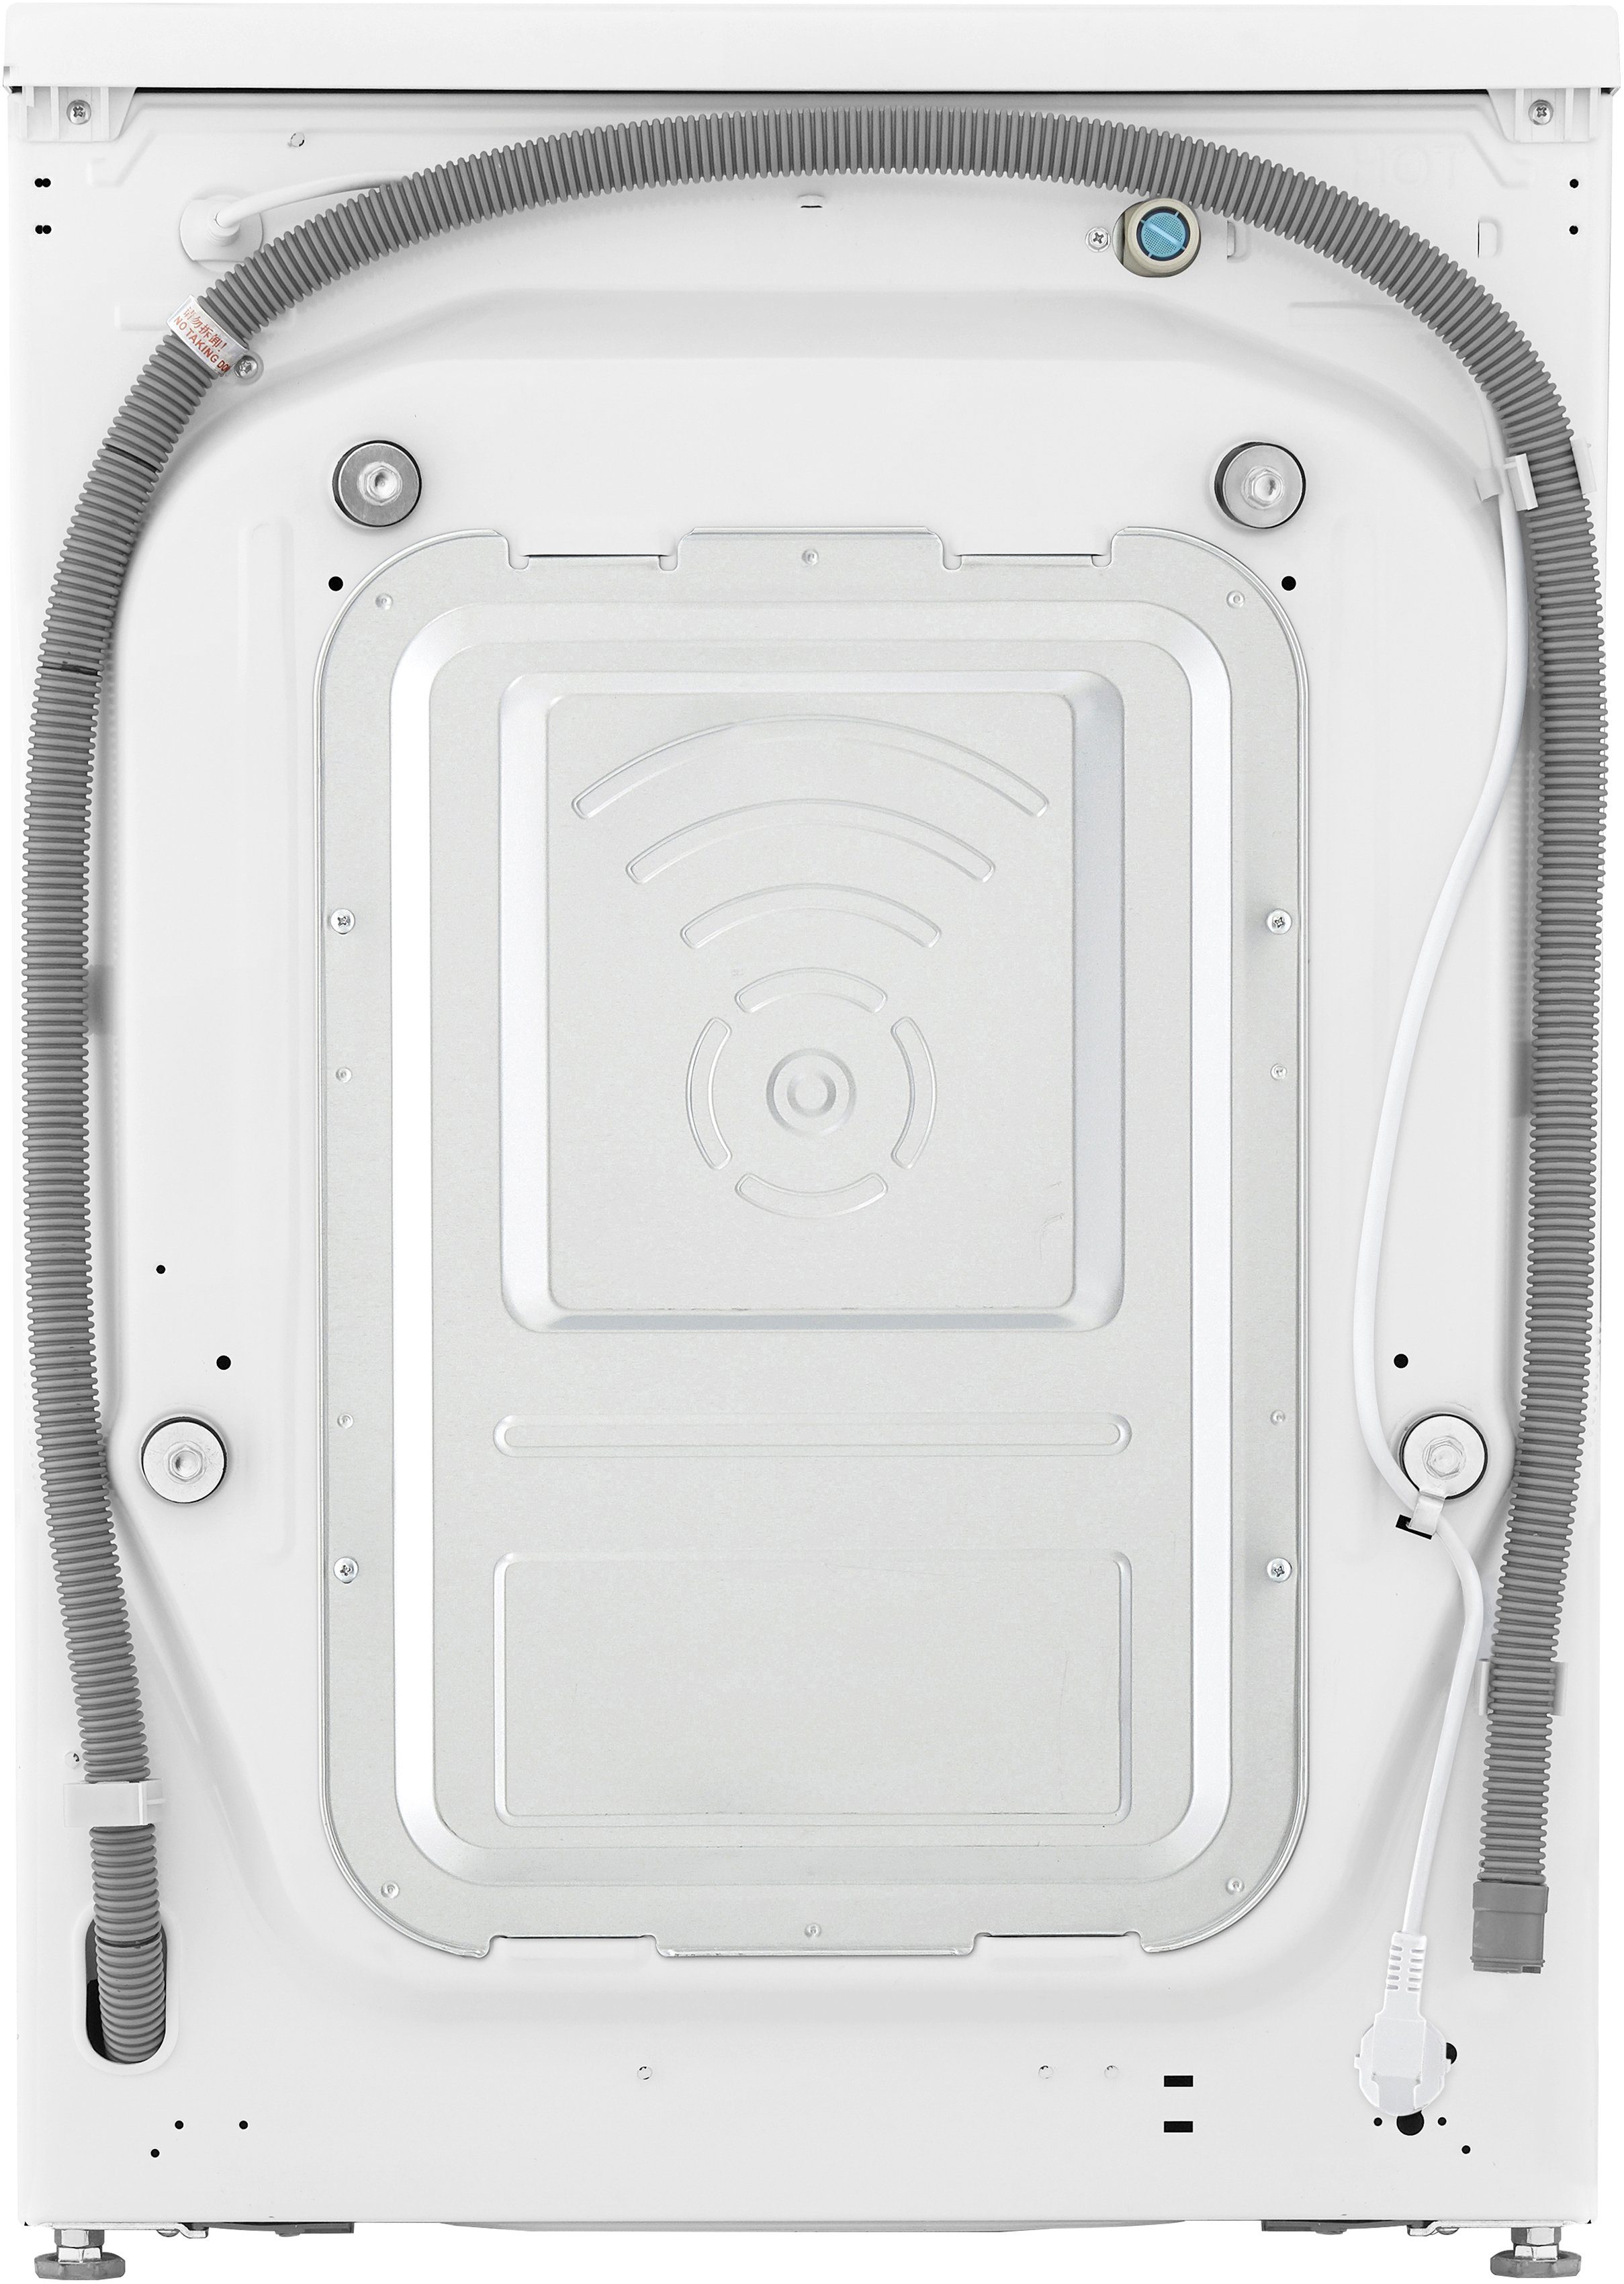 LG Waschtrockner V9WD128H2, 8 U/min, nur 1400 Waschen 12 kg, Minuten TurboWash® in 39 kg, 